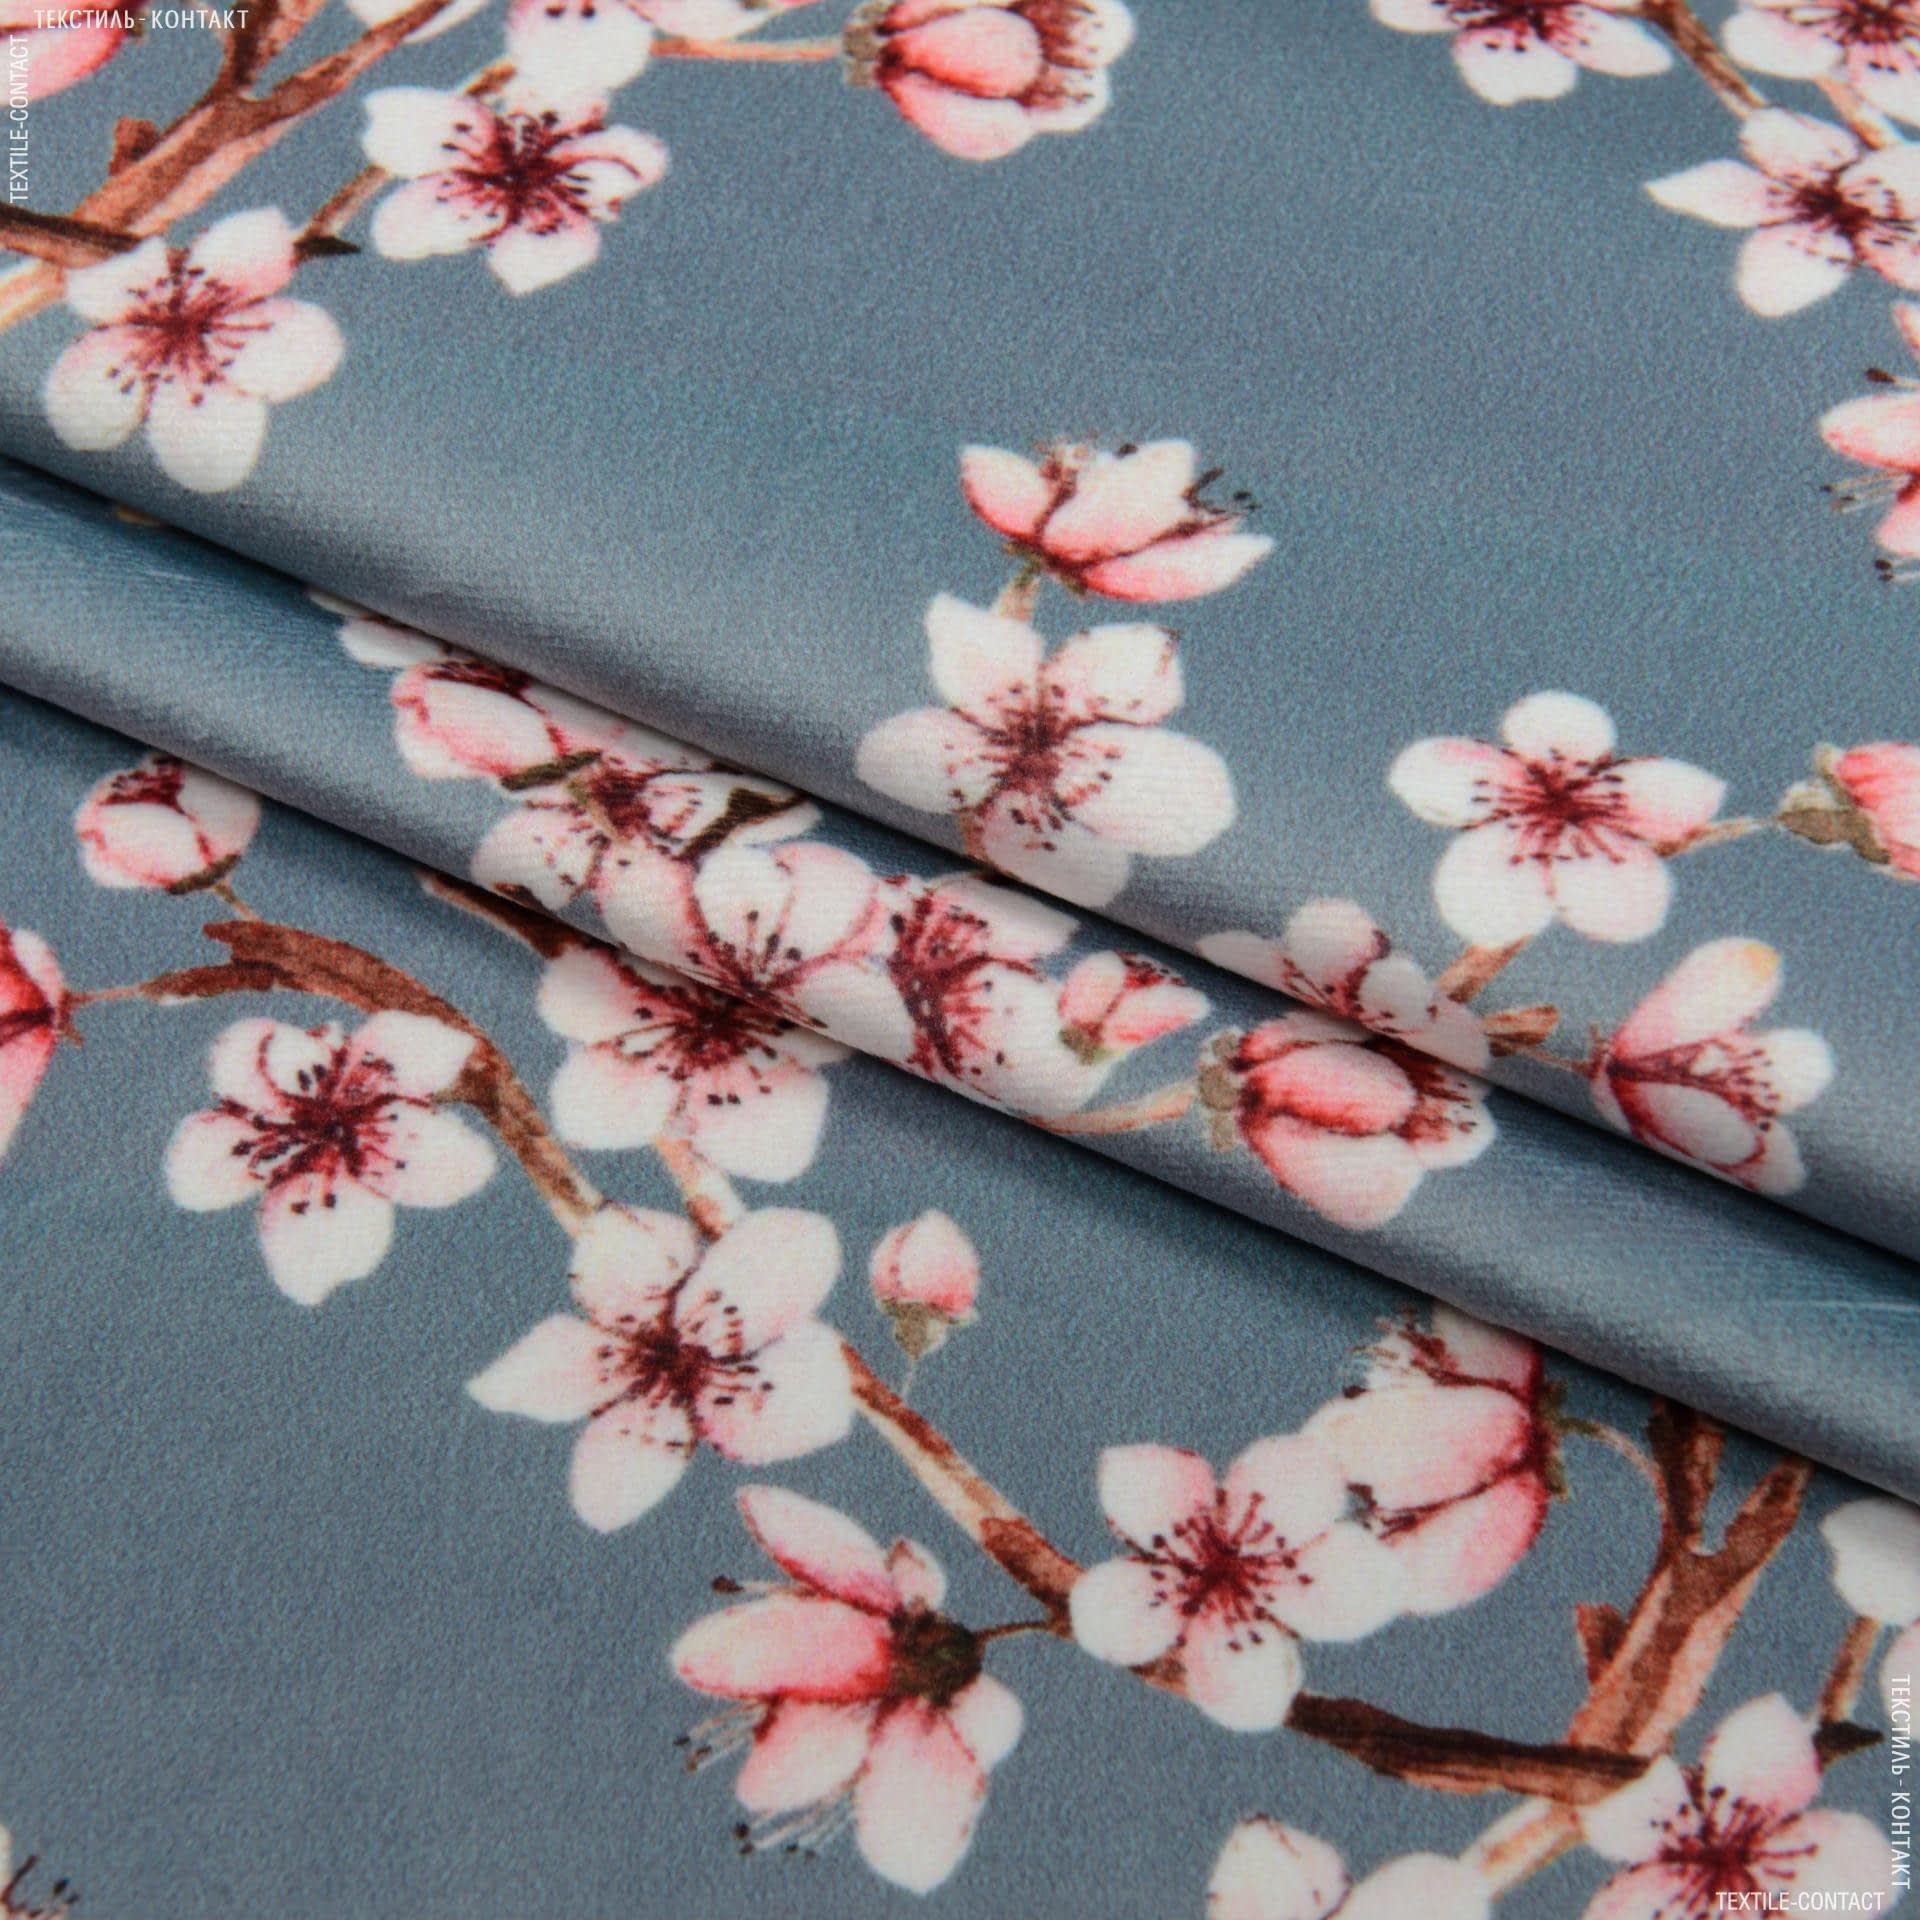 Ткань сакура. Мебельная ткань Сакура. Sakura мебельная ткань. Ткань Сакура для мебели.